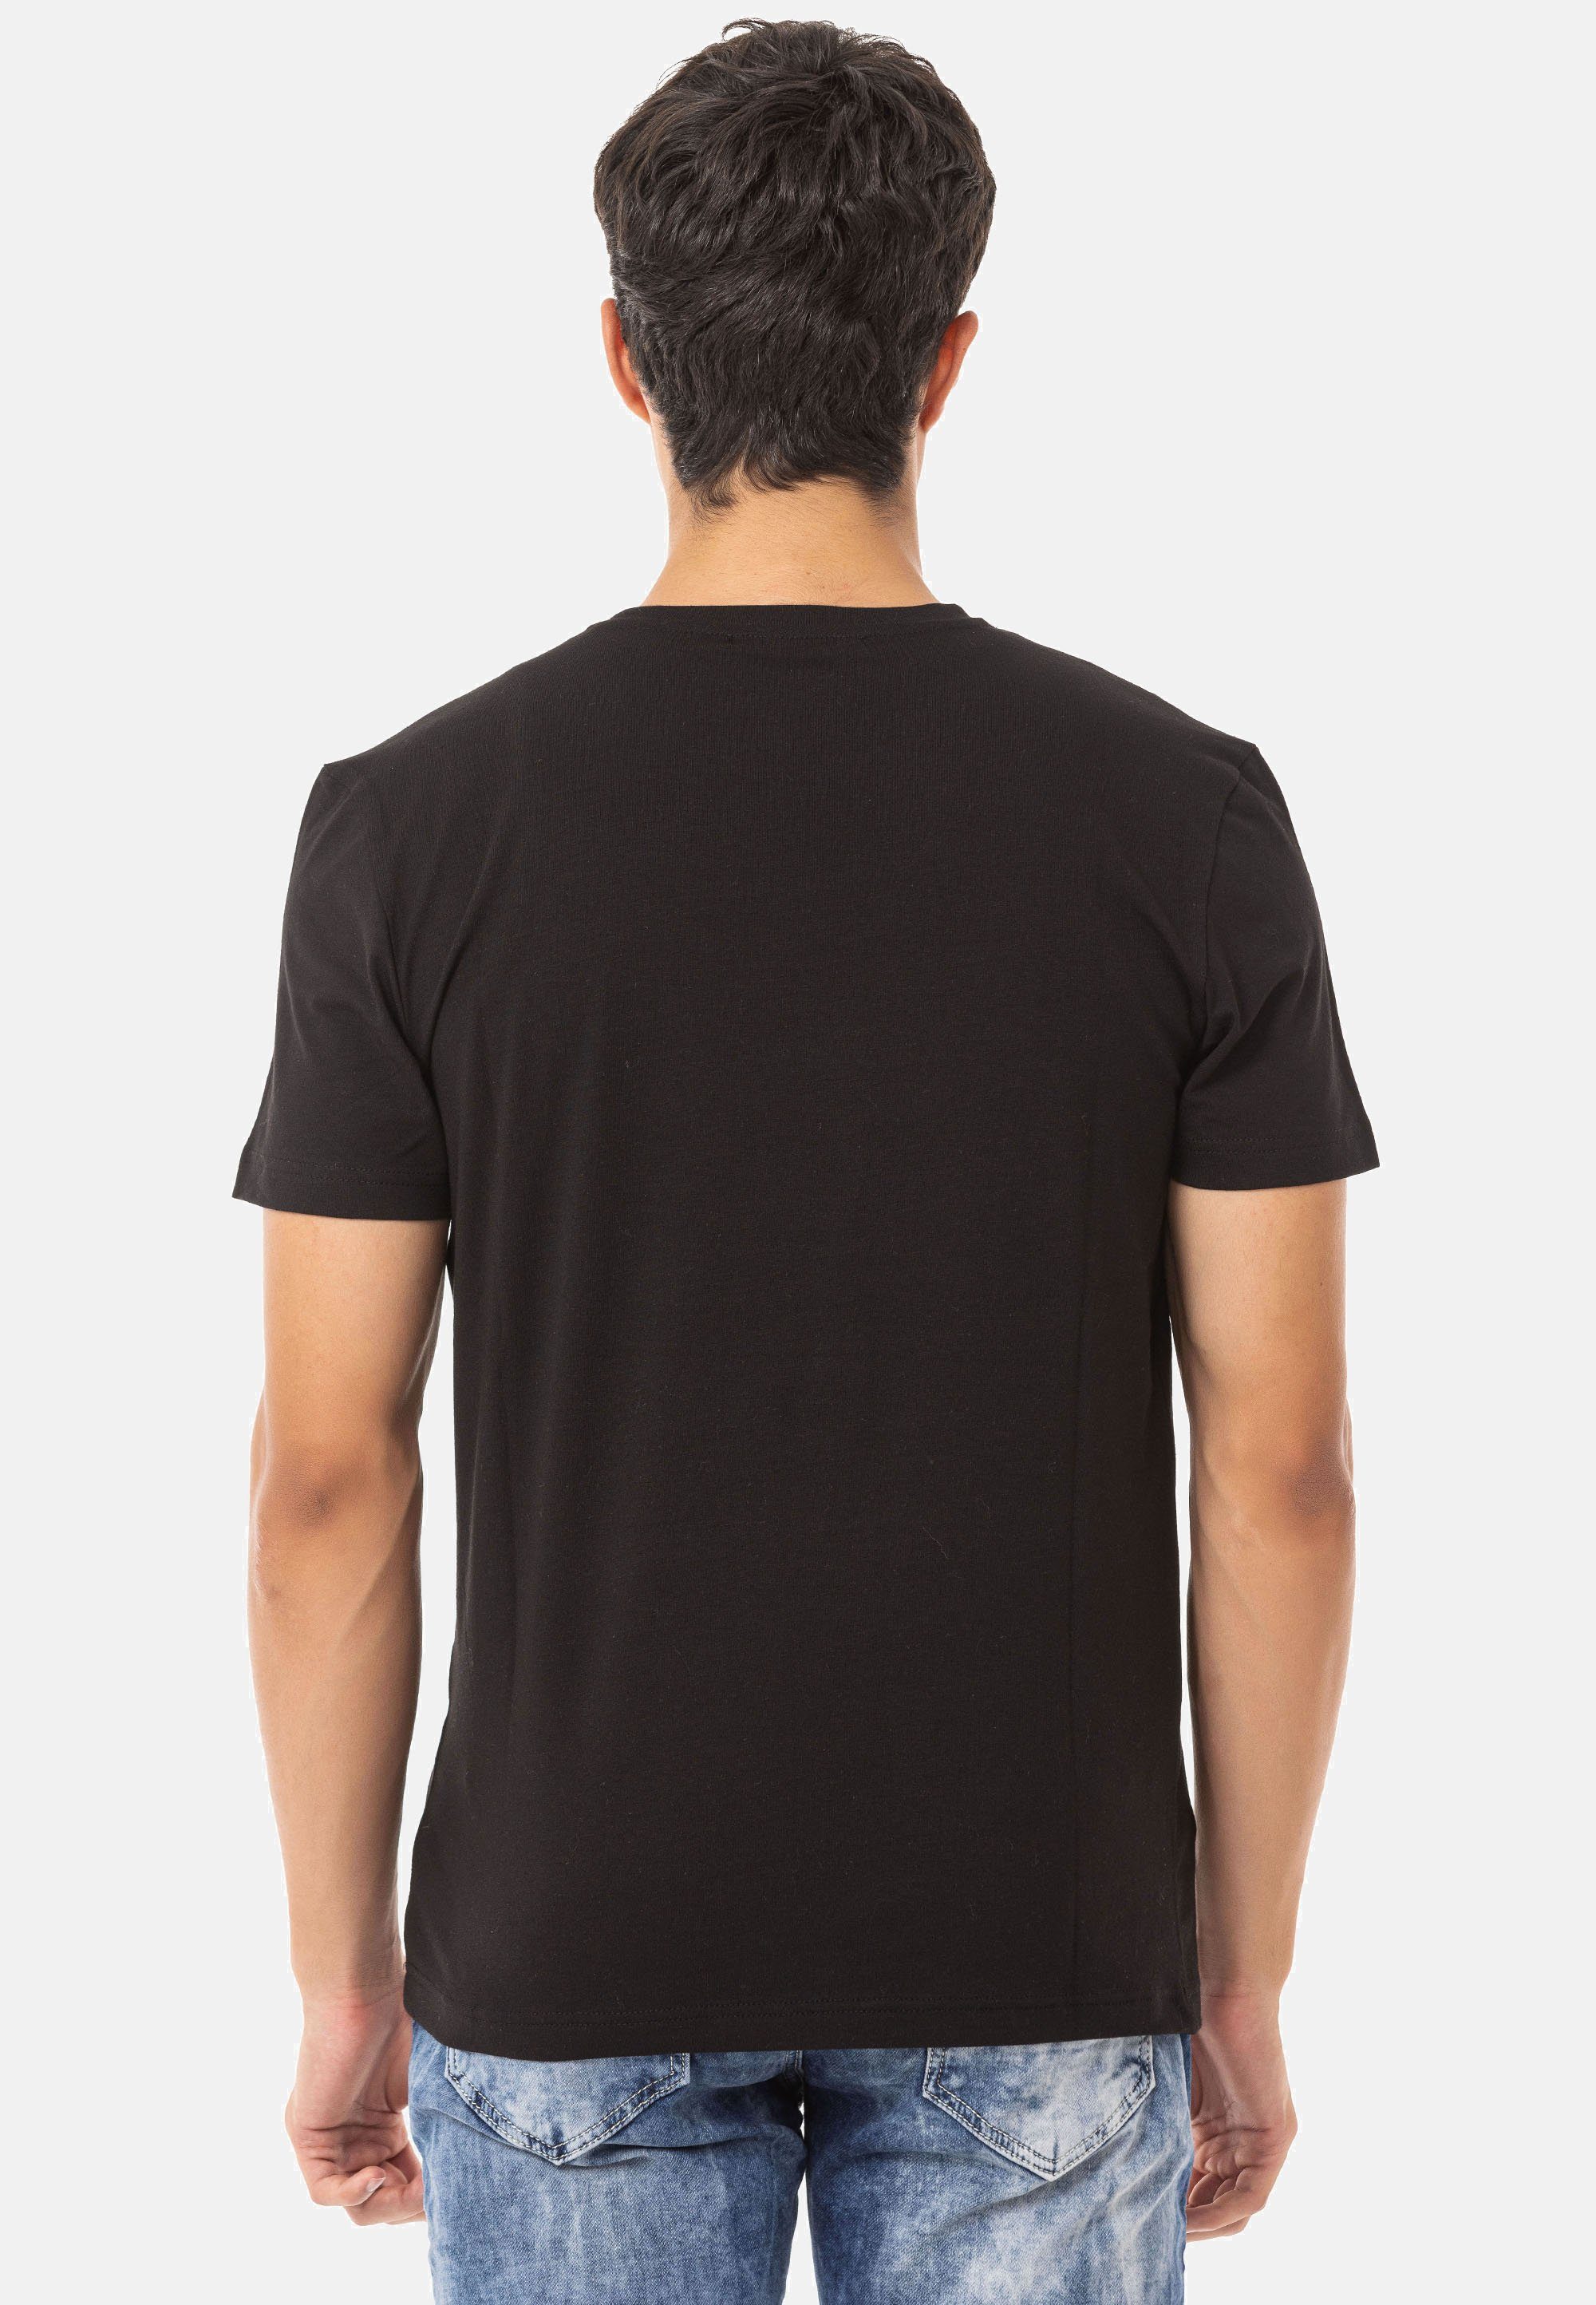 T-Shirt trendigem & Baxx Markenprint Cipo CT717 mit schwarz